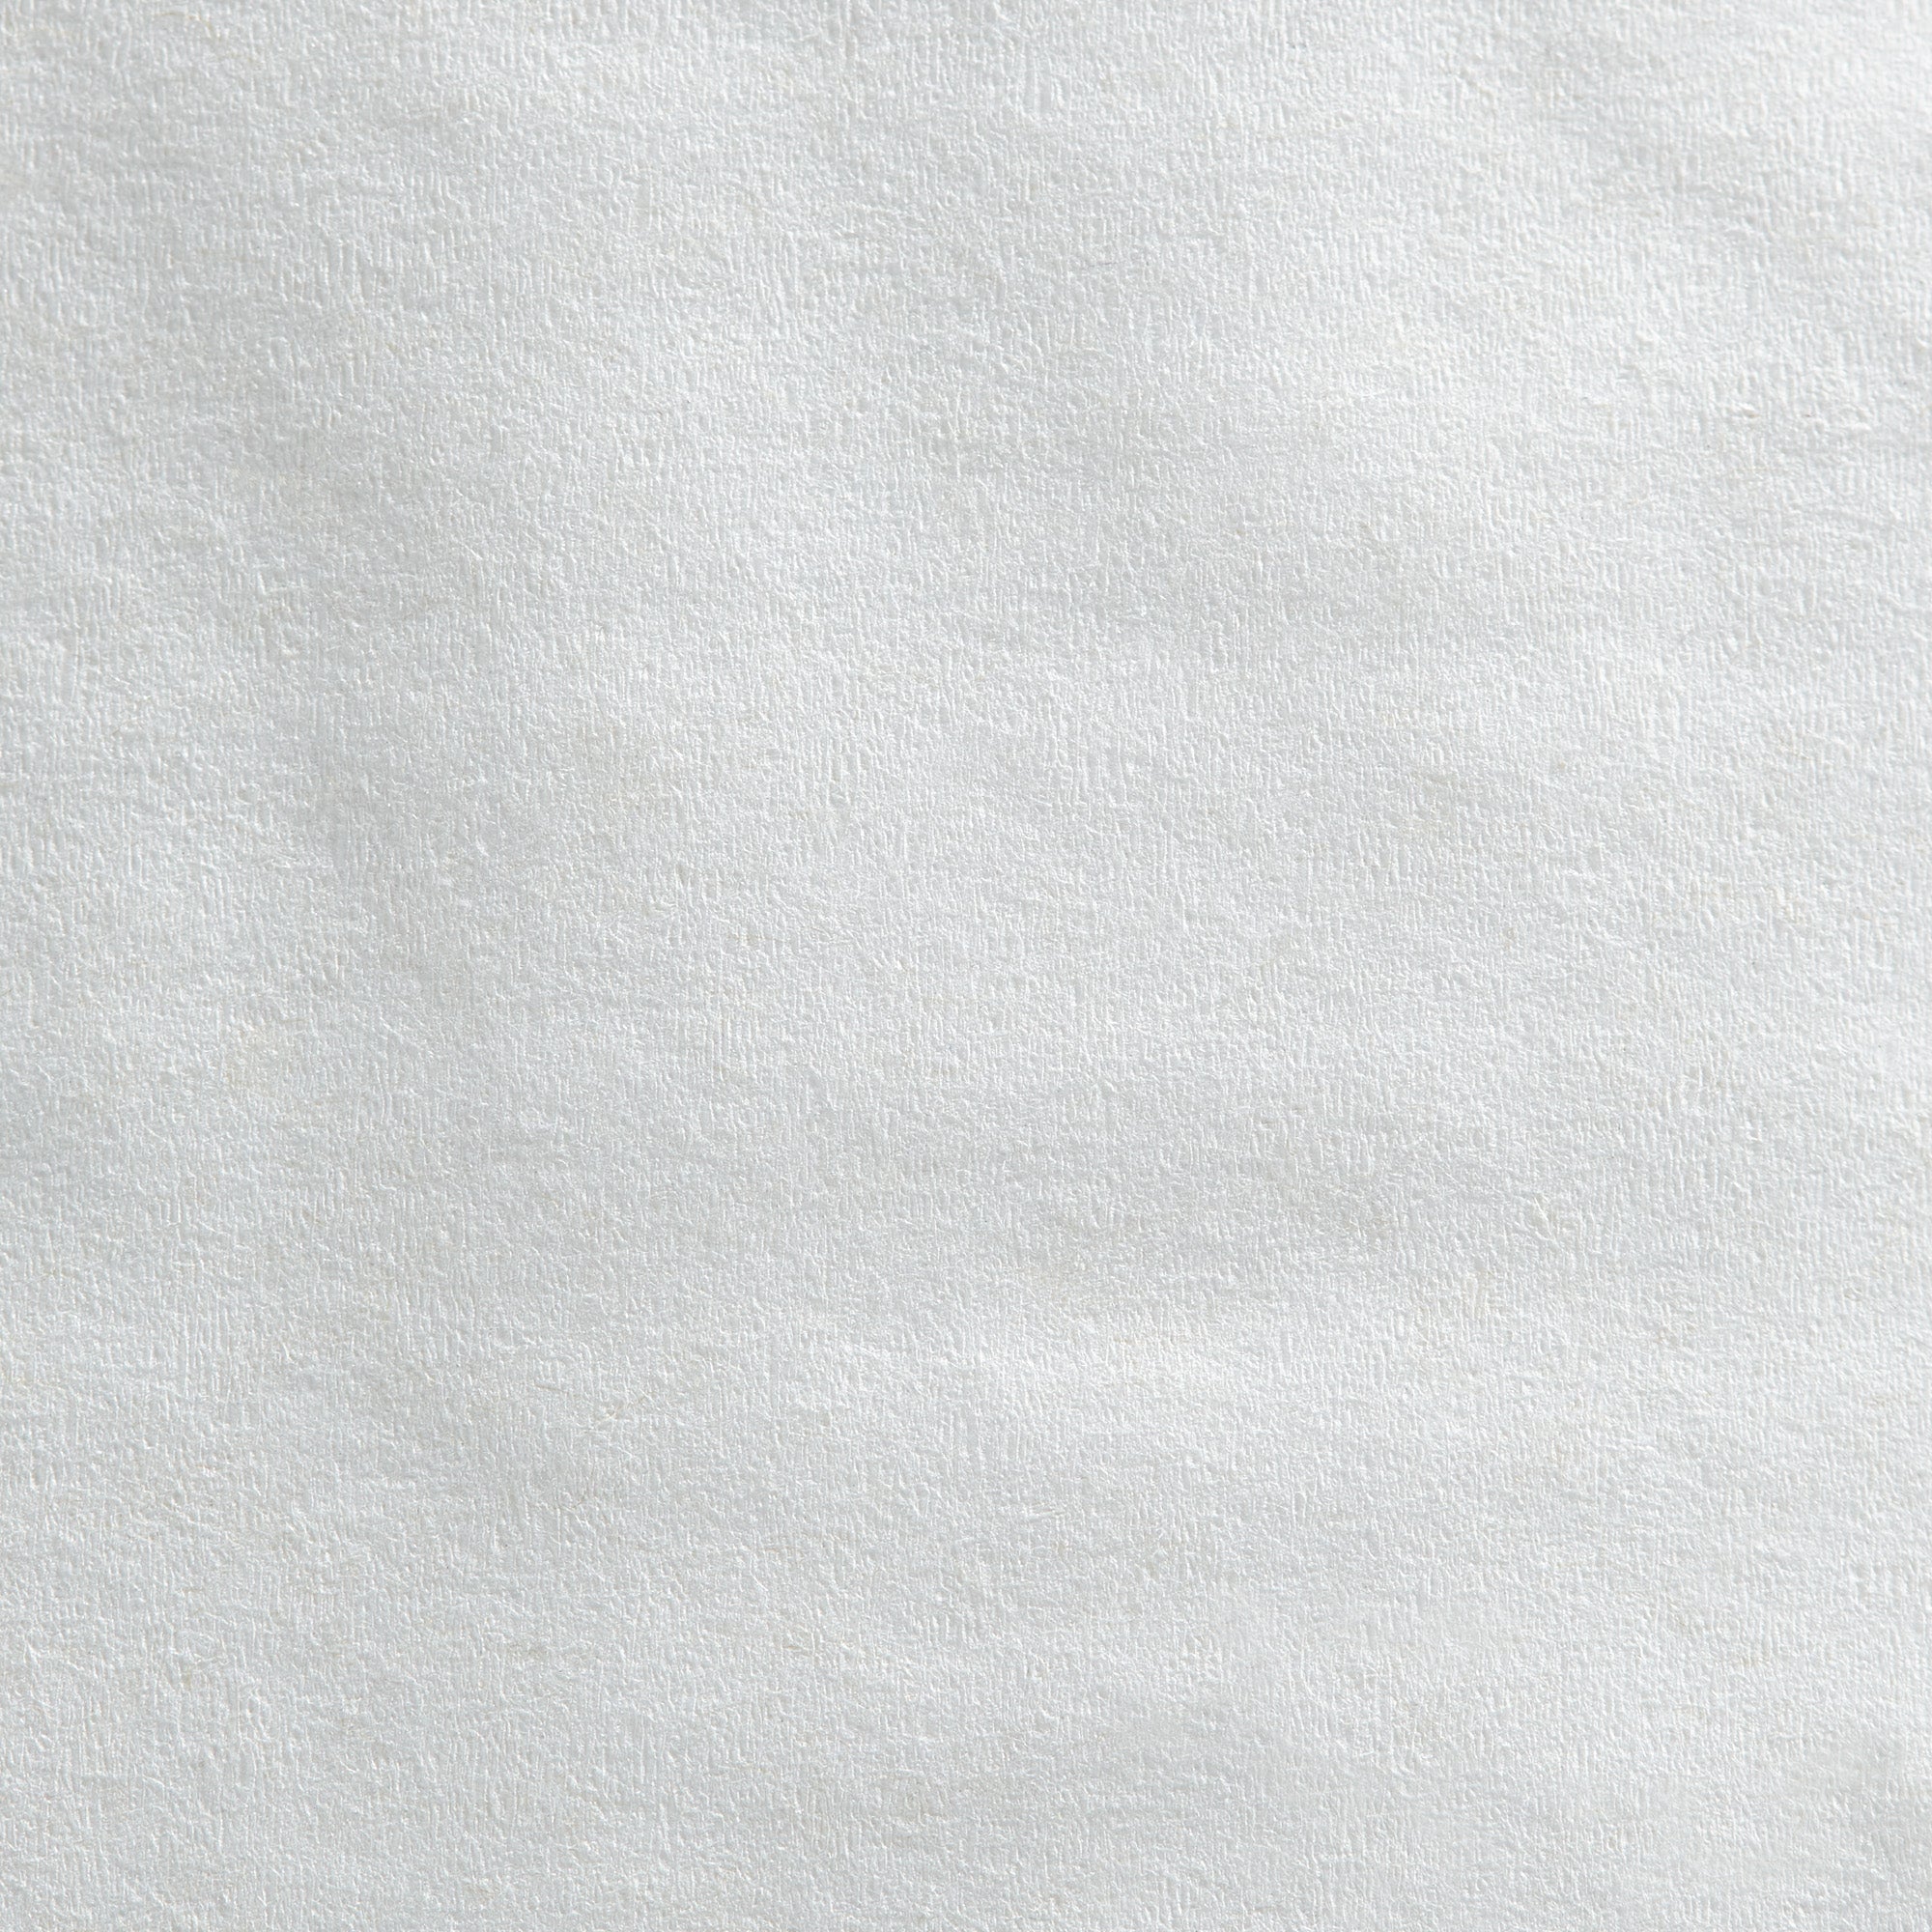 נייר טואלט דו-שכבתי ג'מבו ג'וניור PACIFIC BLUE BASIC™ מבית GP PRO (ג'ורג'יה פסיפיק), לבן, (8 גלילים של 304.80 מטר סהכ 2438.40 מטר)